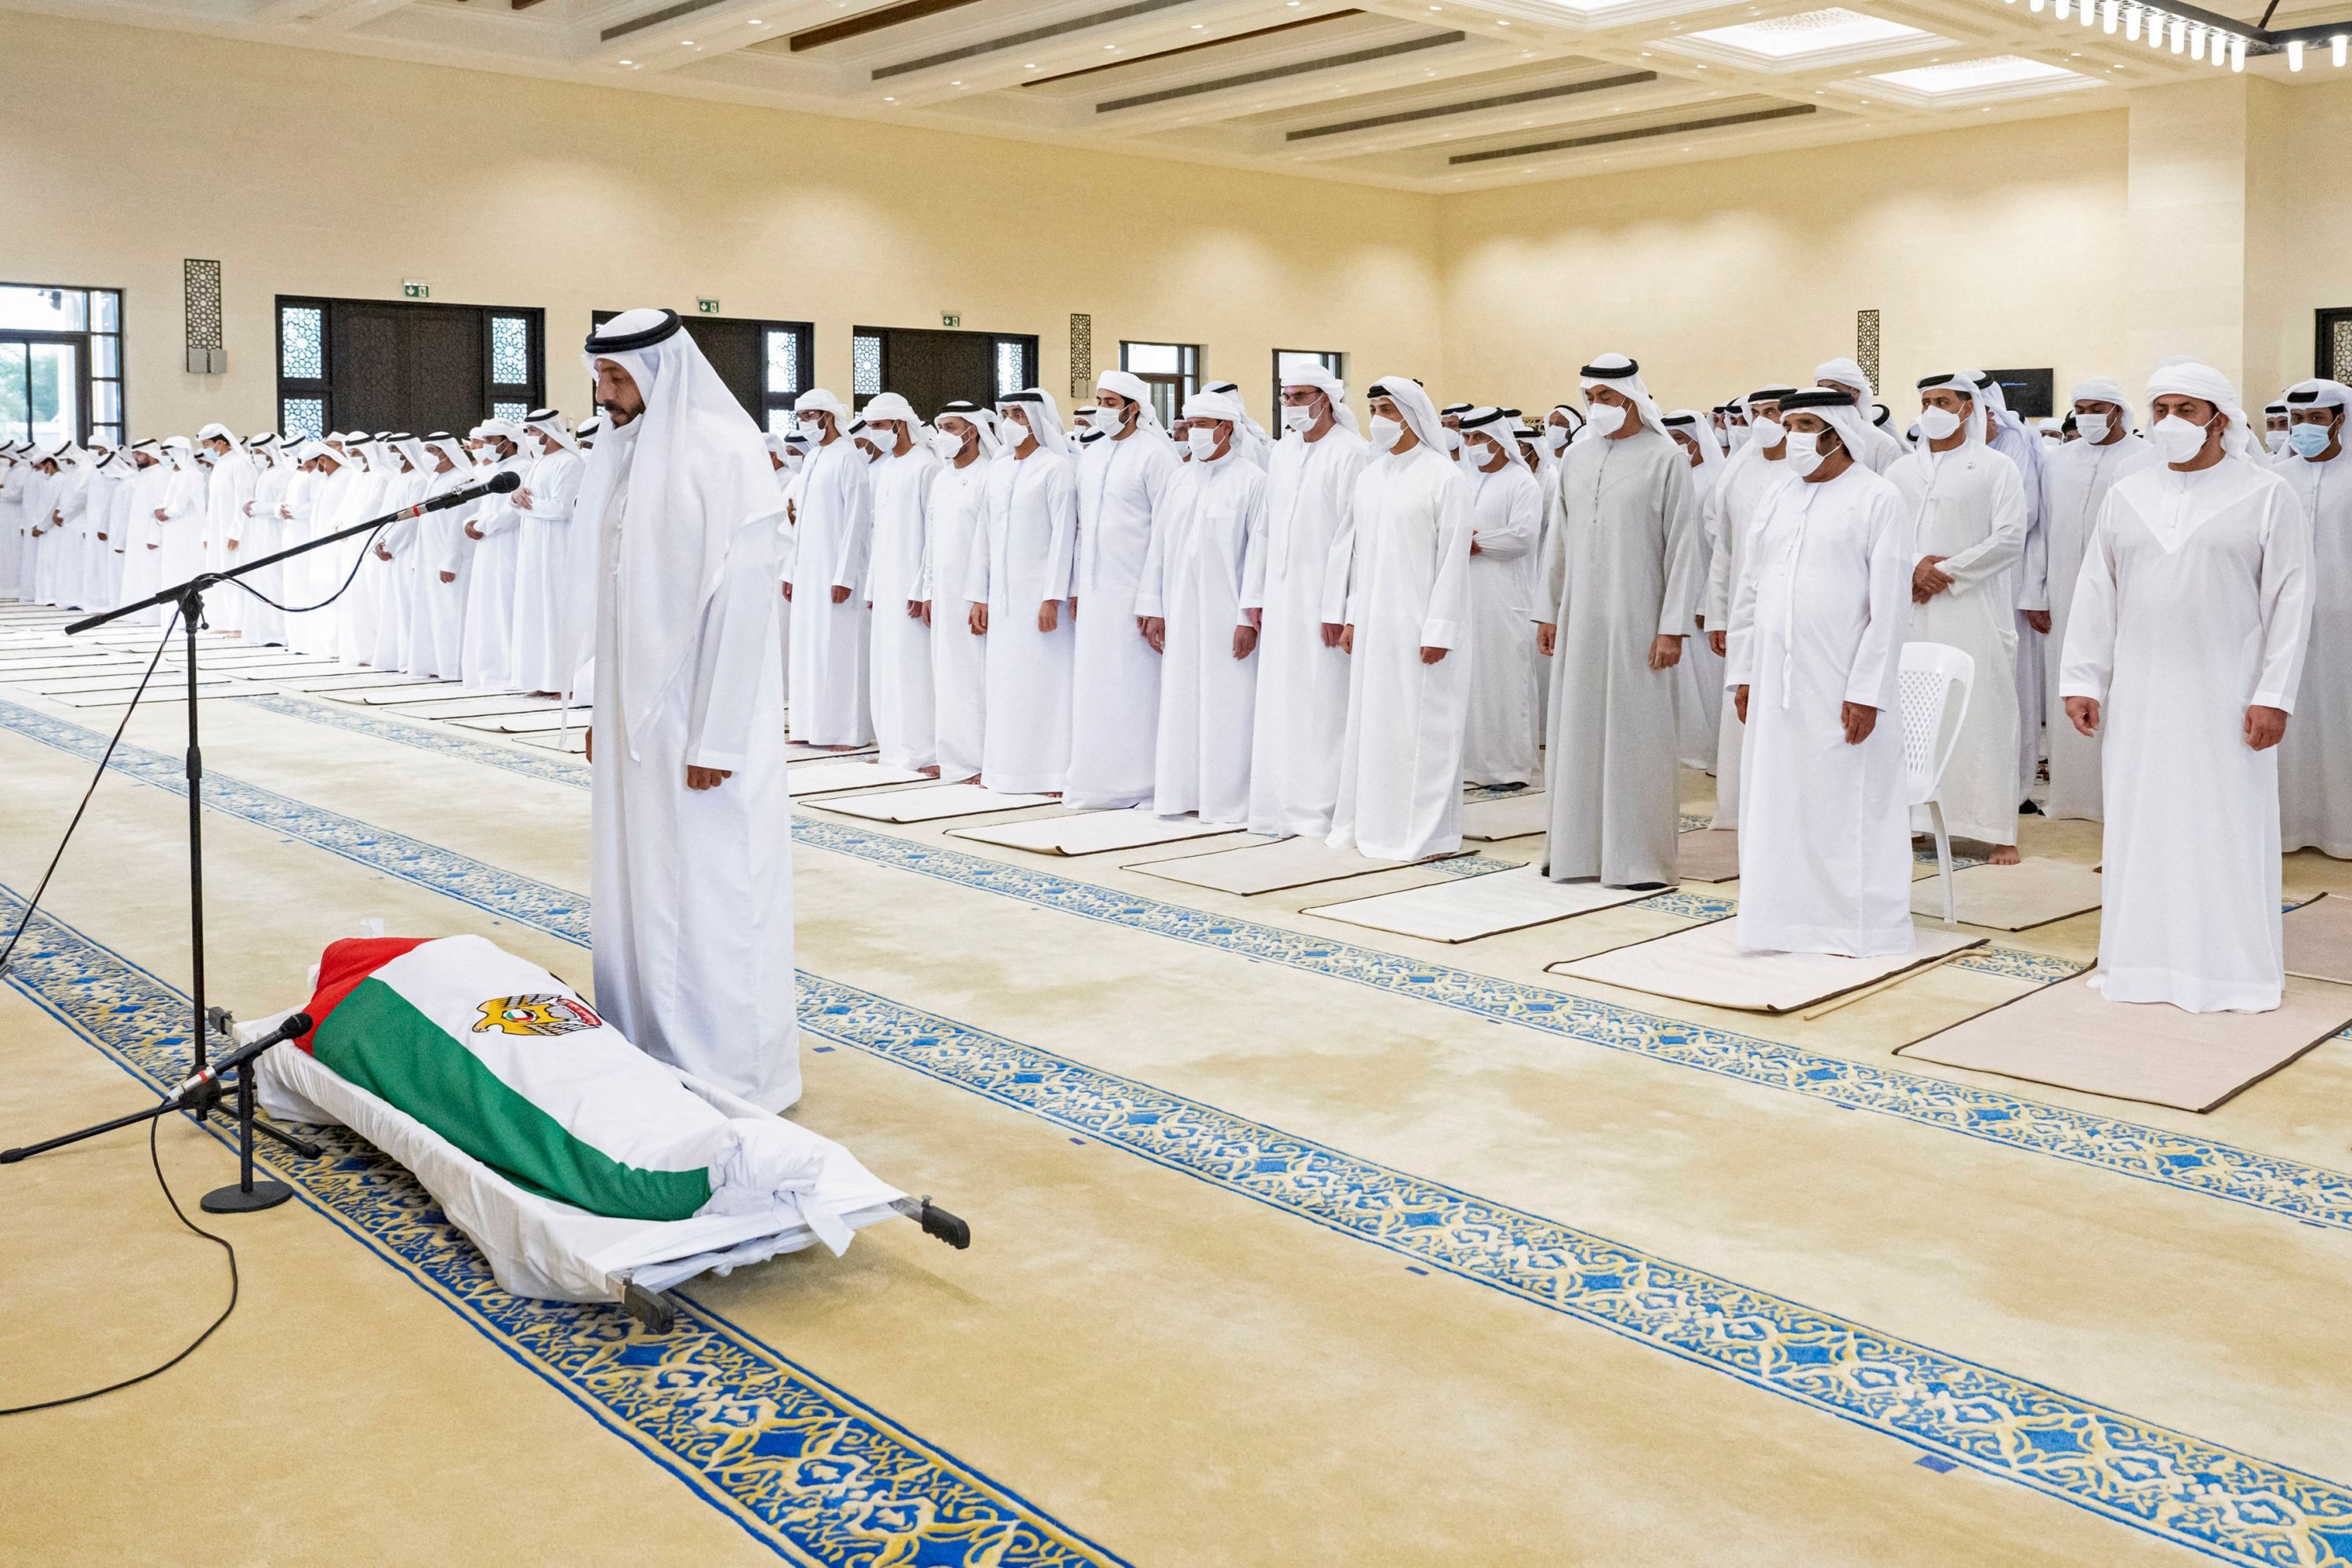 BAE Cumhurbaşkanlığı İşleri Bakanlığı tarafından yayınlanan bir bildiri resmi, Abu Dabi Kraliyet Prensi ve BAE Silahlı Kuvvetleri Yüksek Komutan Yardımcısı Mohamed bin Zayed al-Nahyan'ı (sağda), BAE'nin son Cumhurbaşkanı Şeyh Khalifa bin Zayed için bir cenaze namazına katılırken gösteriyor Al Nahyan 13 Mayıs 2022'de Abu Dabi'de bir camide. (Fotoğraf: Hamad al-Kaabi / Cumhurbaşkanlığı İşleri Bakanlığı / AFP) /